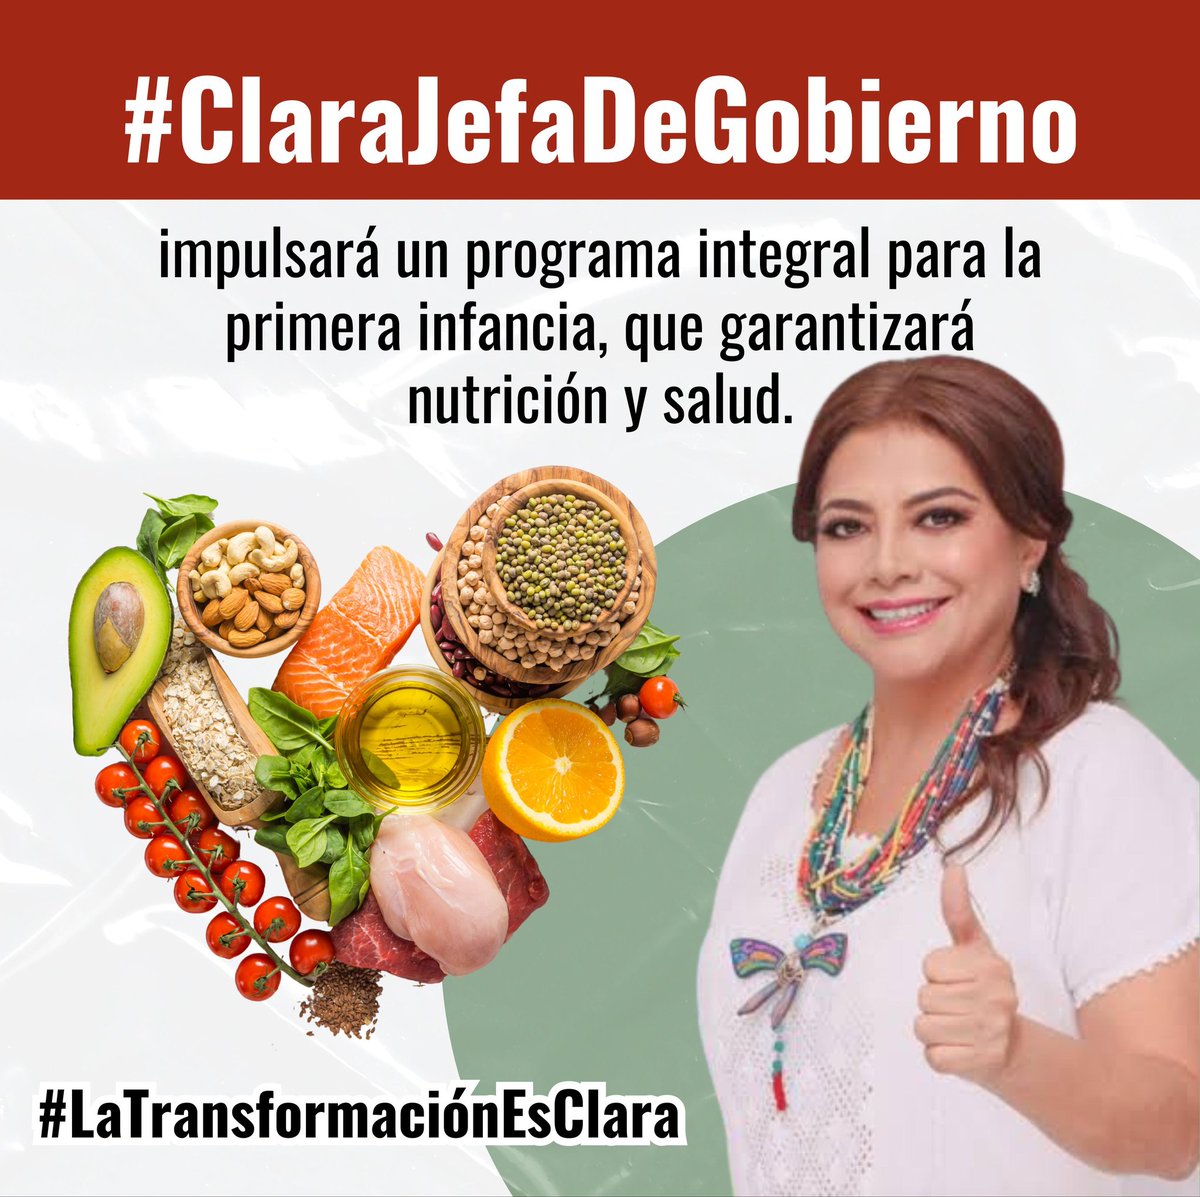 #ClaraJefaDeGobierno 
#LaTransformaciónEsClara